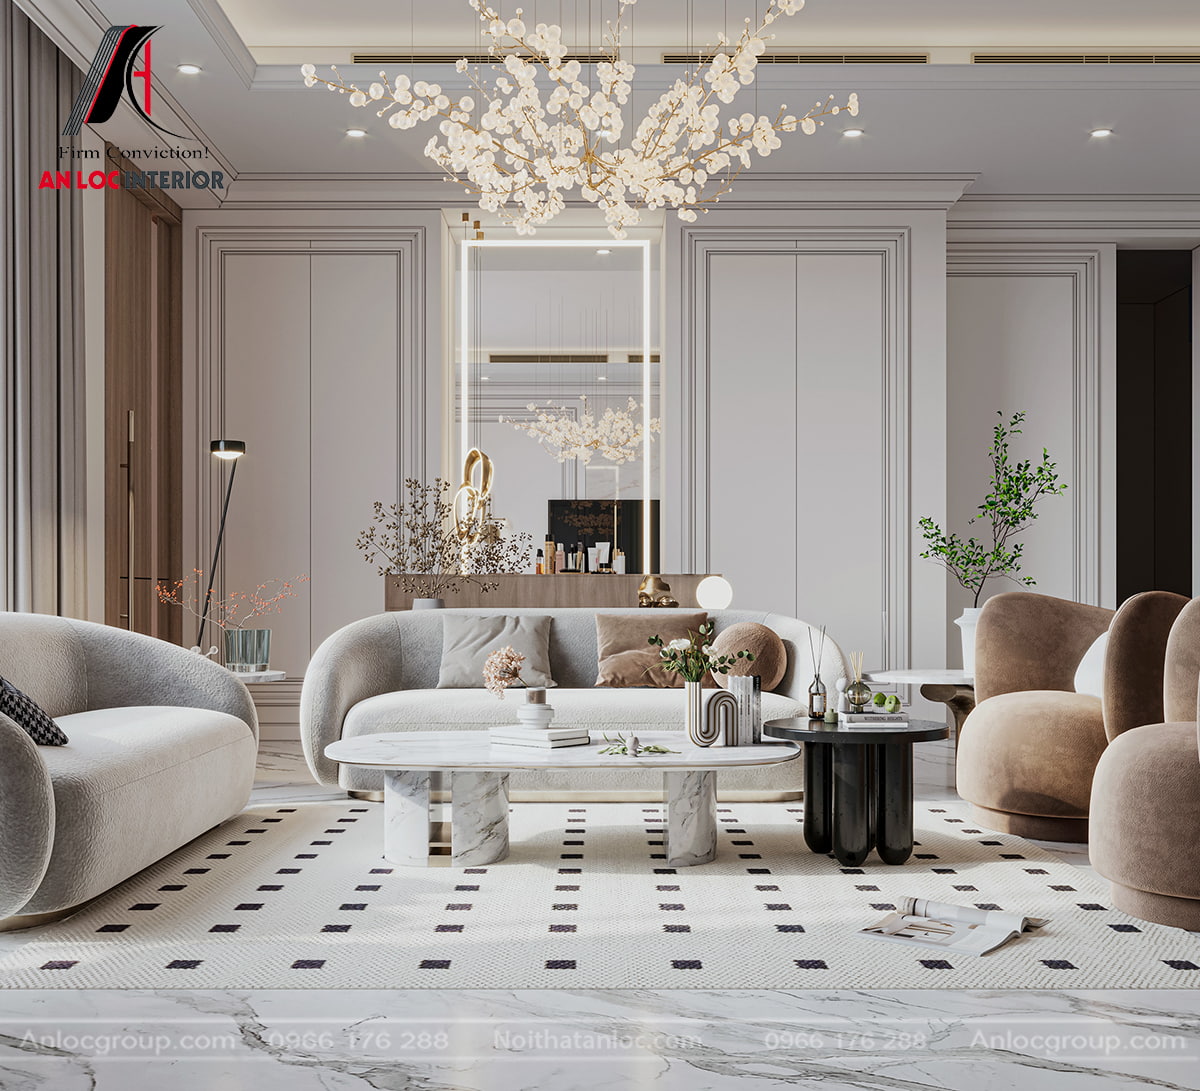 Đơn vị thiết kế nội thất biệt thự chuyên nghiệp sẽ giúp bạn có một biệt thự đẹp, tối ưu công năng nhất 